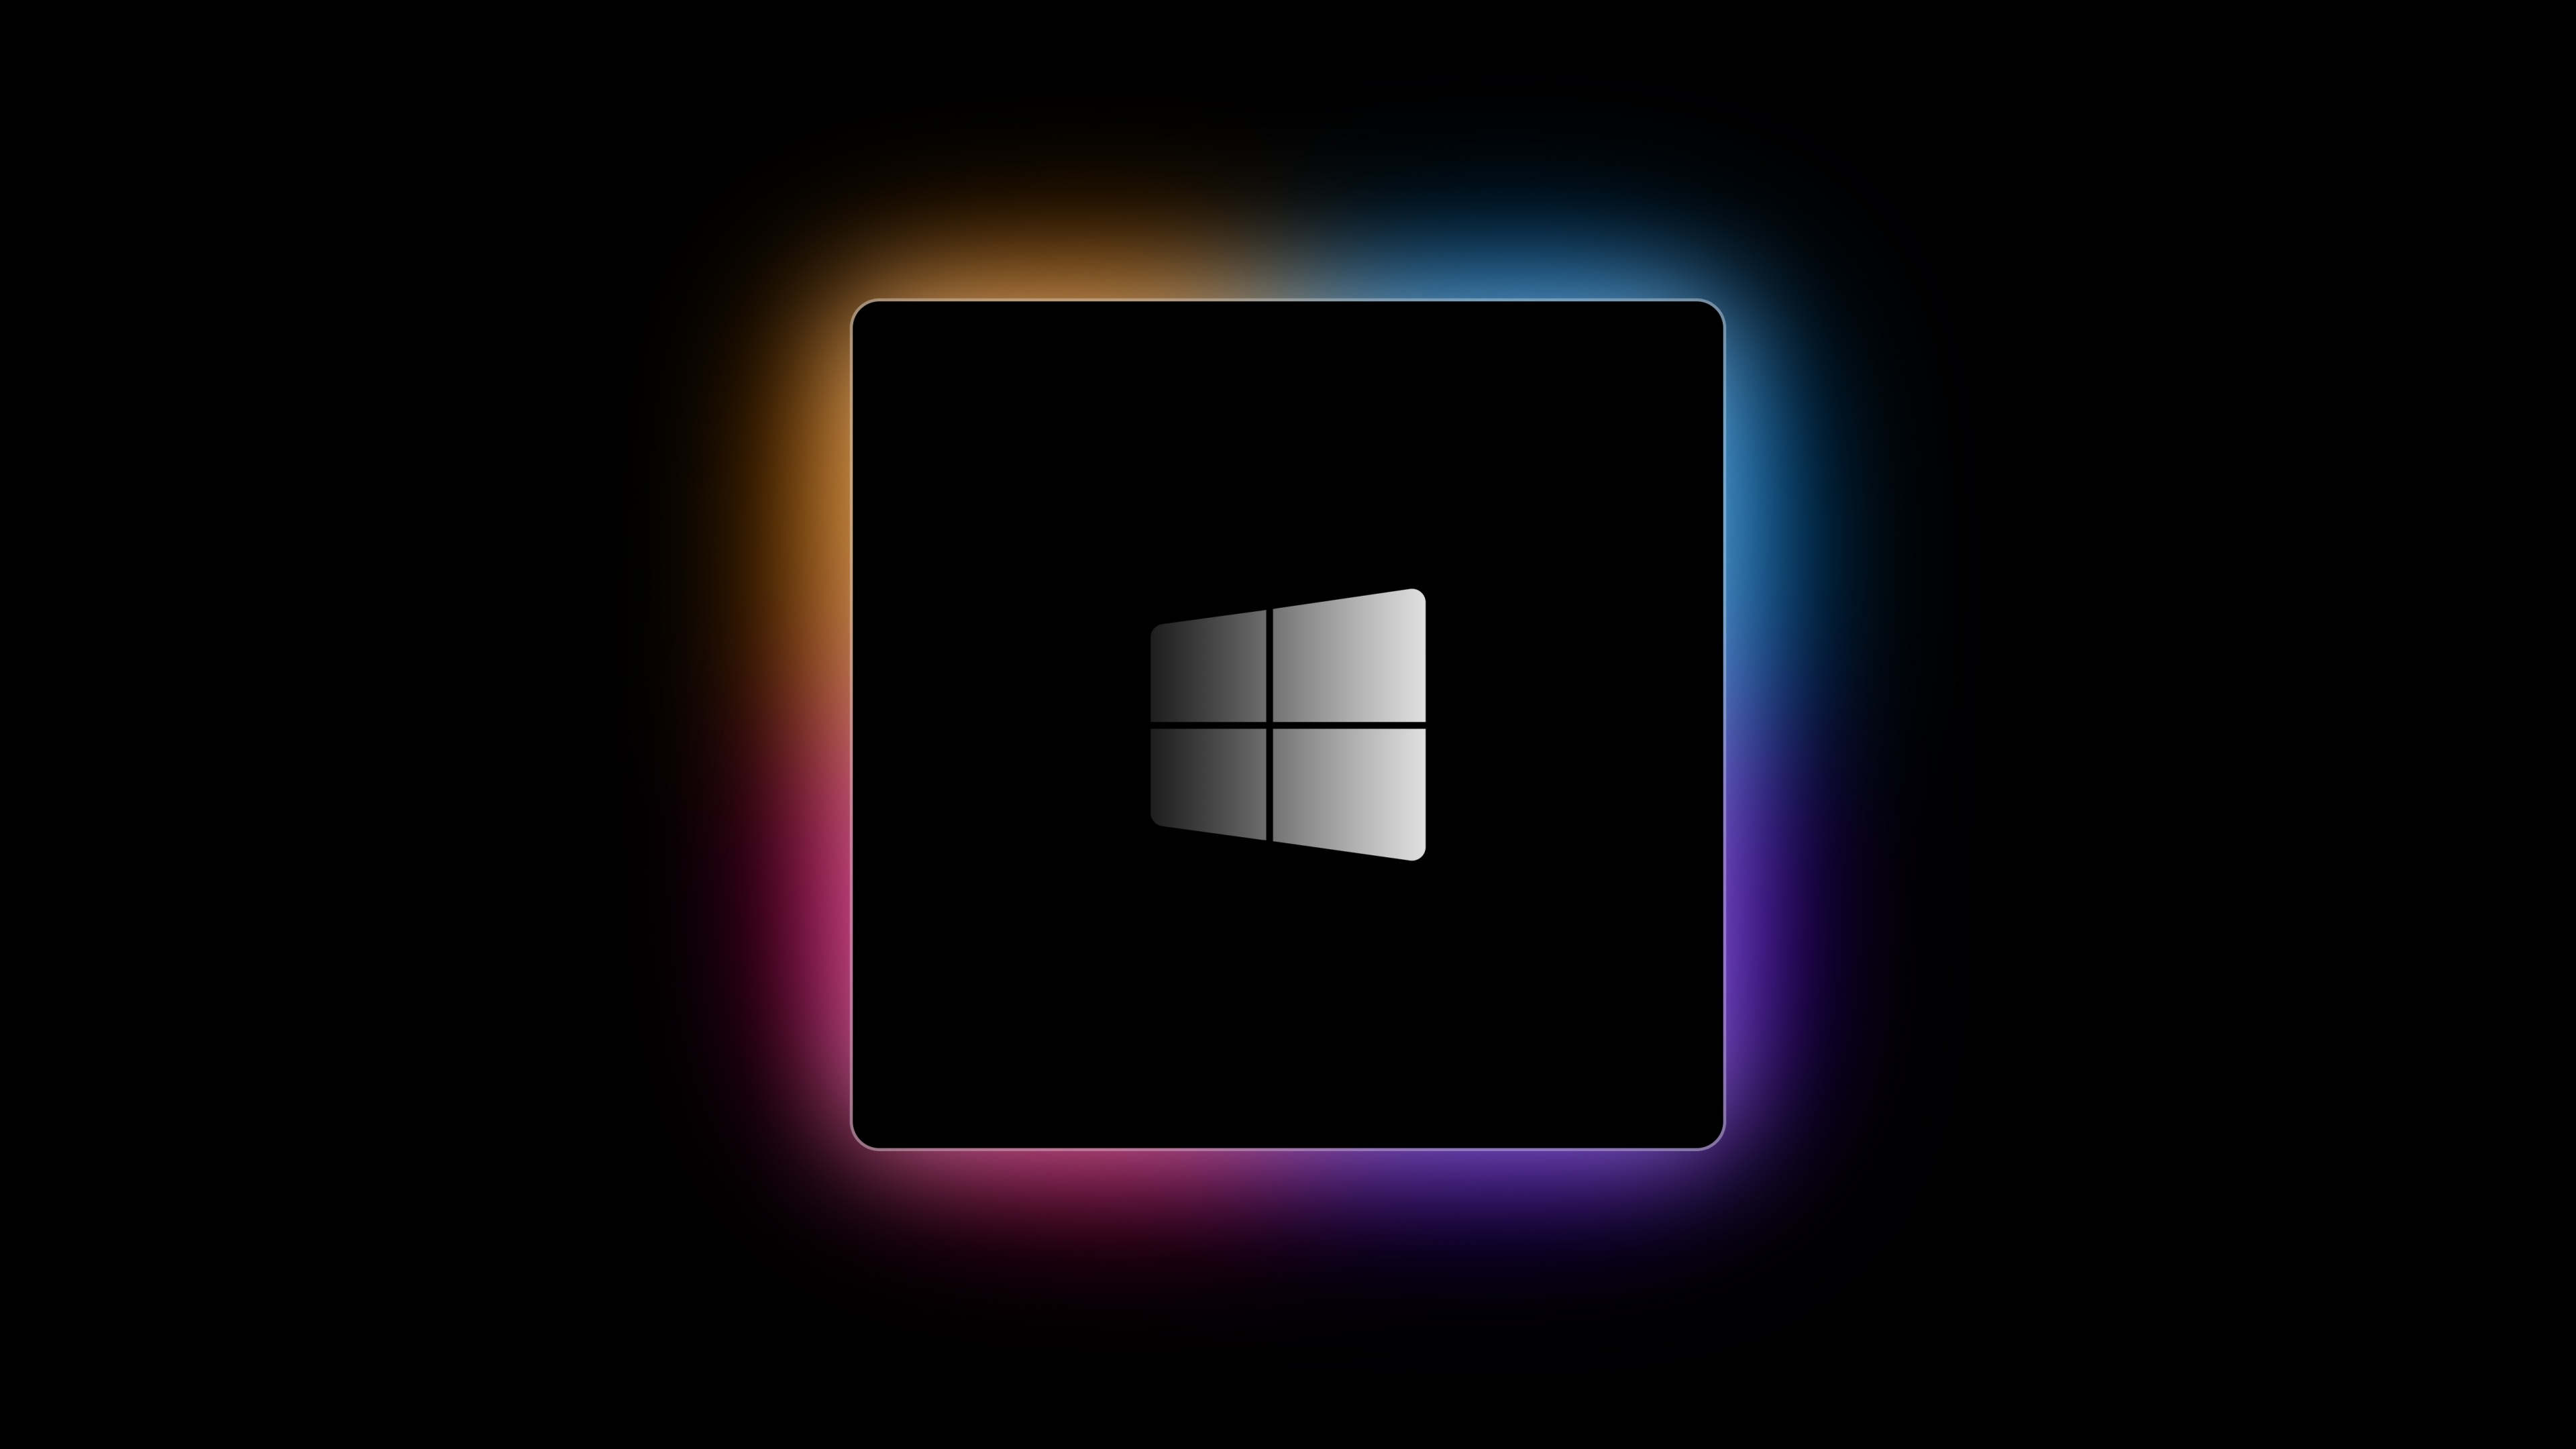 Windows logo 4K M1 Chip sẽ làm cho màn hình của bạn trở nên độc đáo hơn bao giờ hết. Với hình ảnh đặc biệt của logo và chất lượng hình ảnh 4K đỉnh cao, bạn sẽ được trải nghiệm một màn hình đẹp và nổi bật hơn. Thưởng thức ngay bộ sưu tập hình nền Windows logo 4K M1 Chip để tìm kiếm một hình nền độc đáo và ấn tượng.